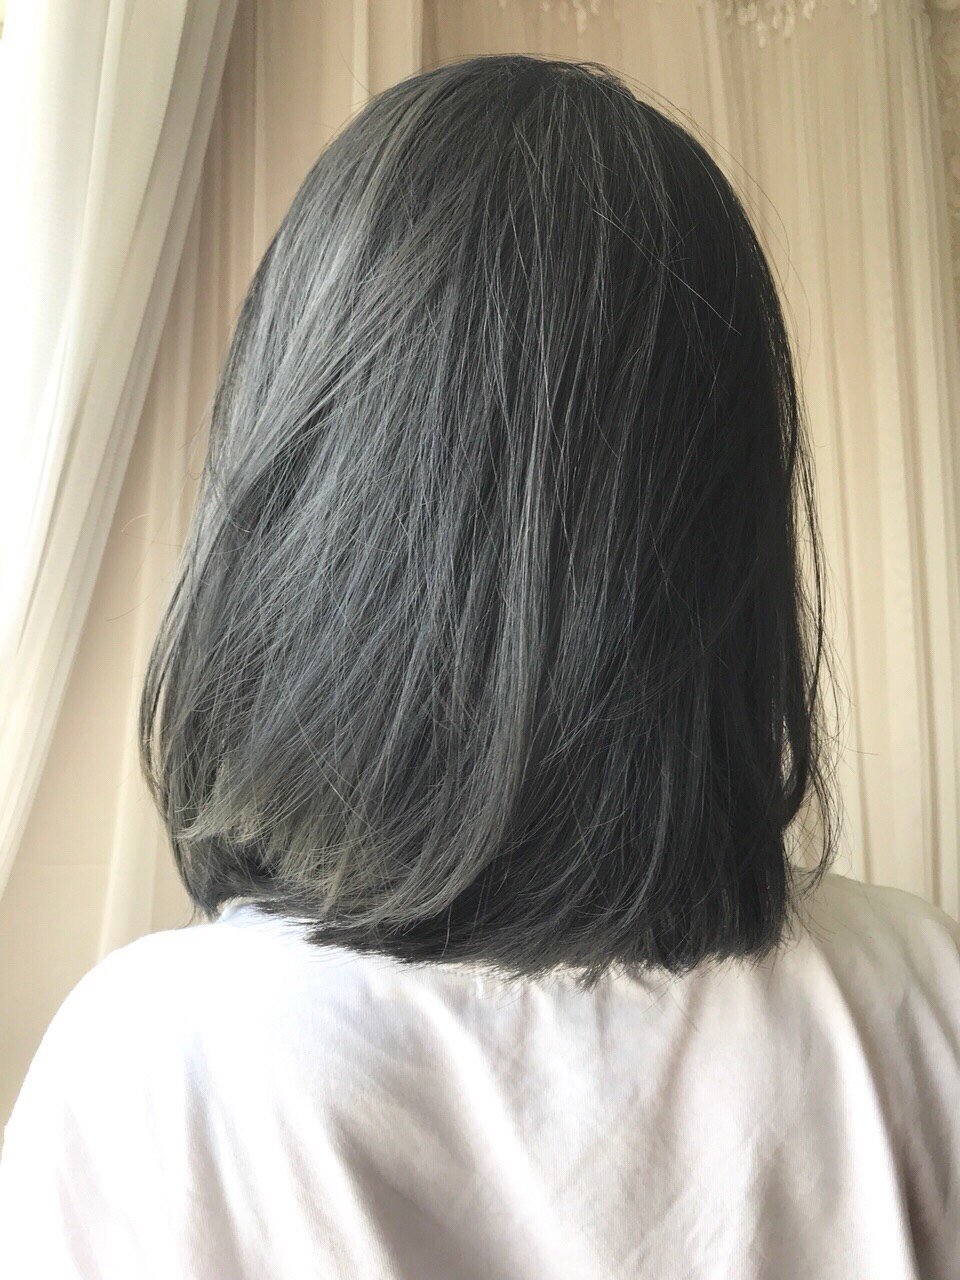 灰蓝色头发效果图图片